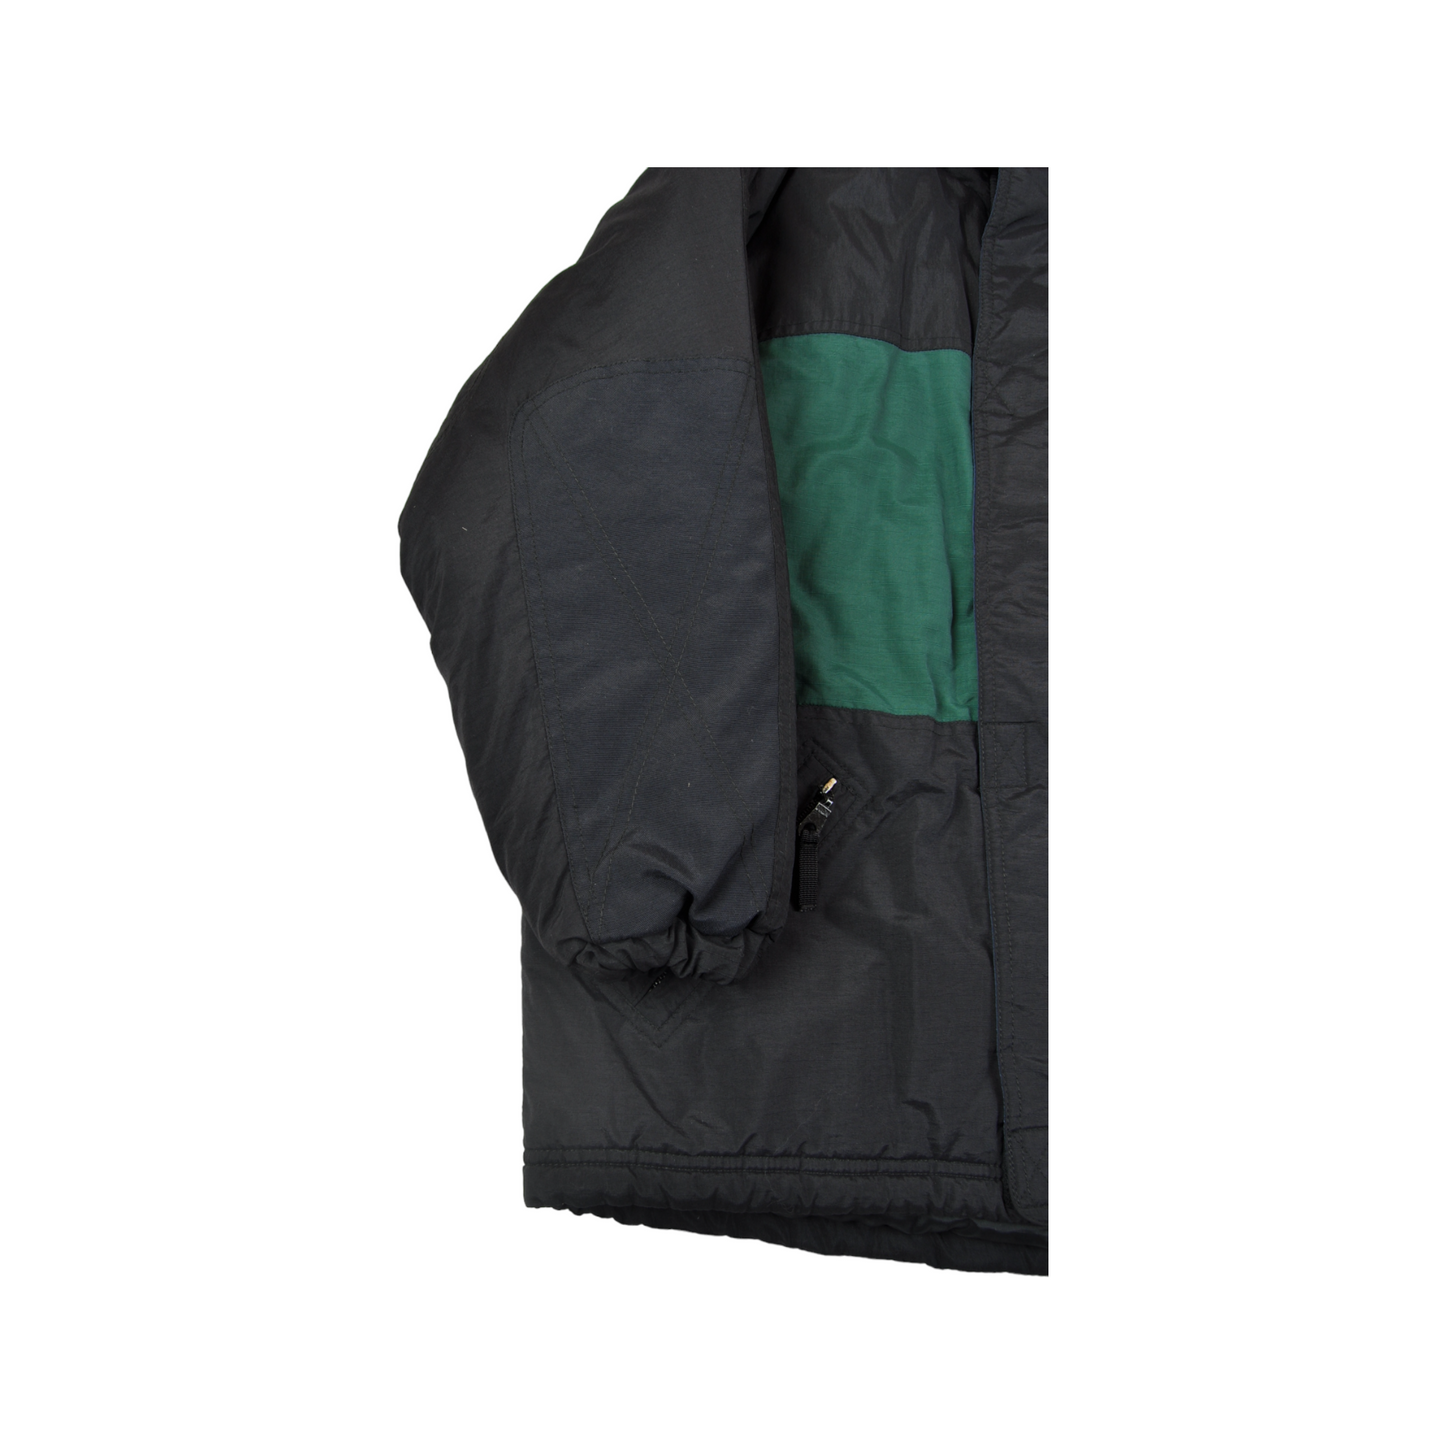 Vintage Ski Jacket Retro Block Colour Black/Green Ladies XS